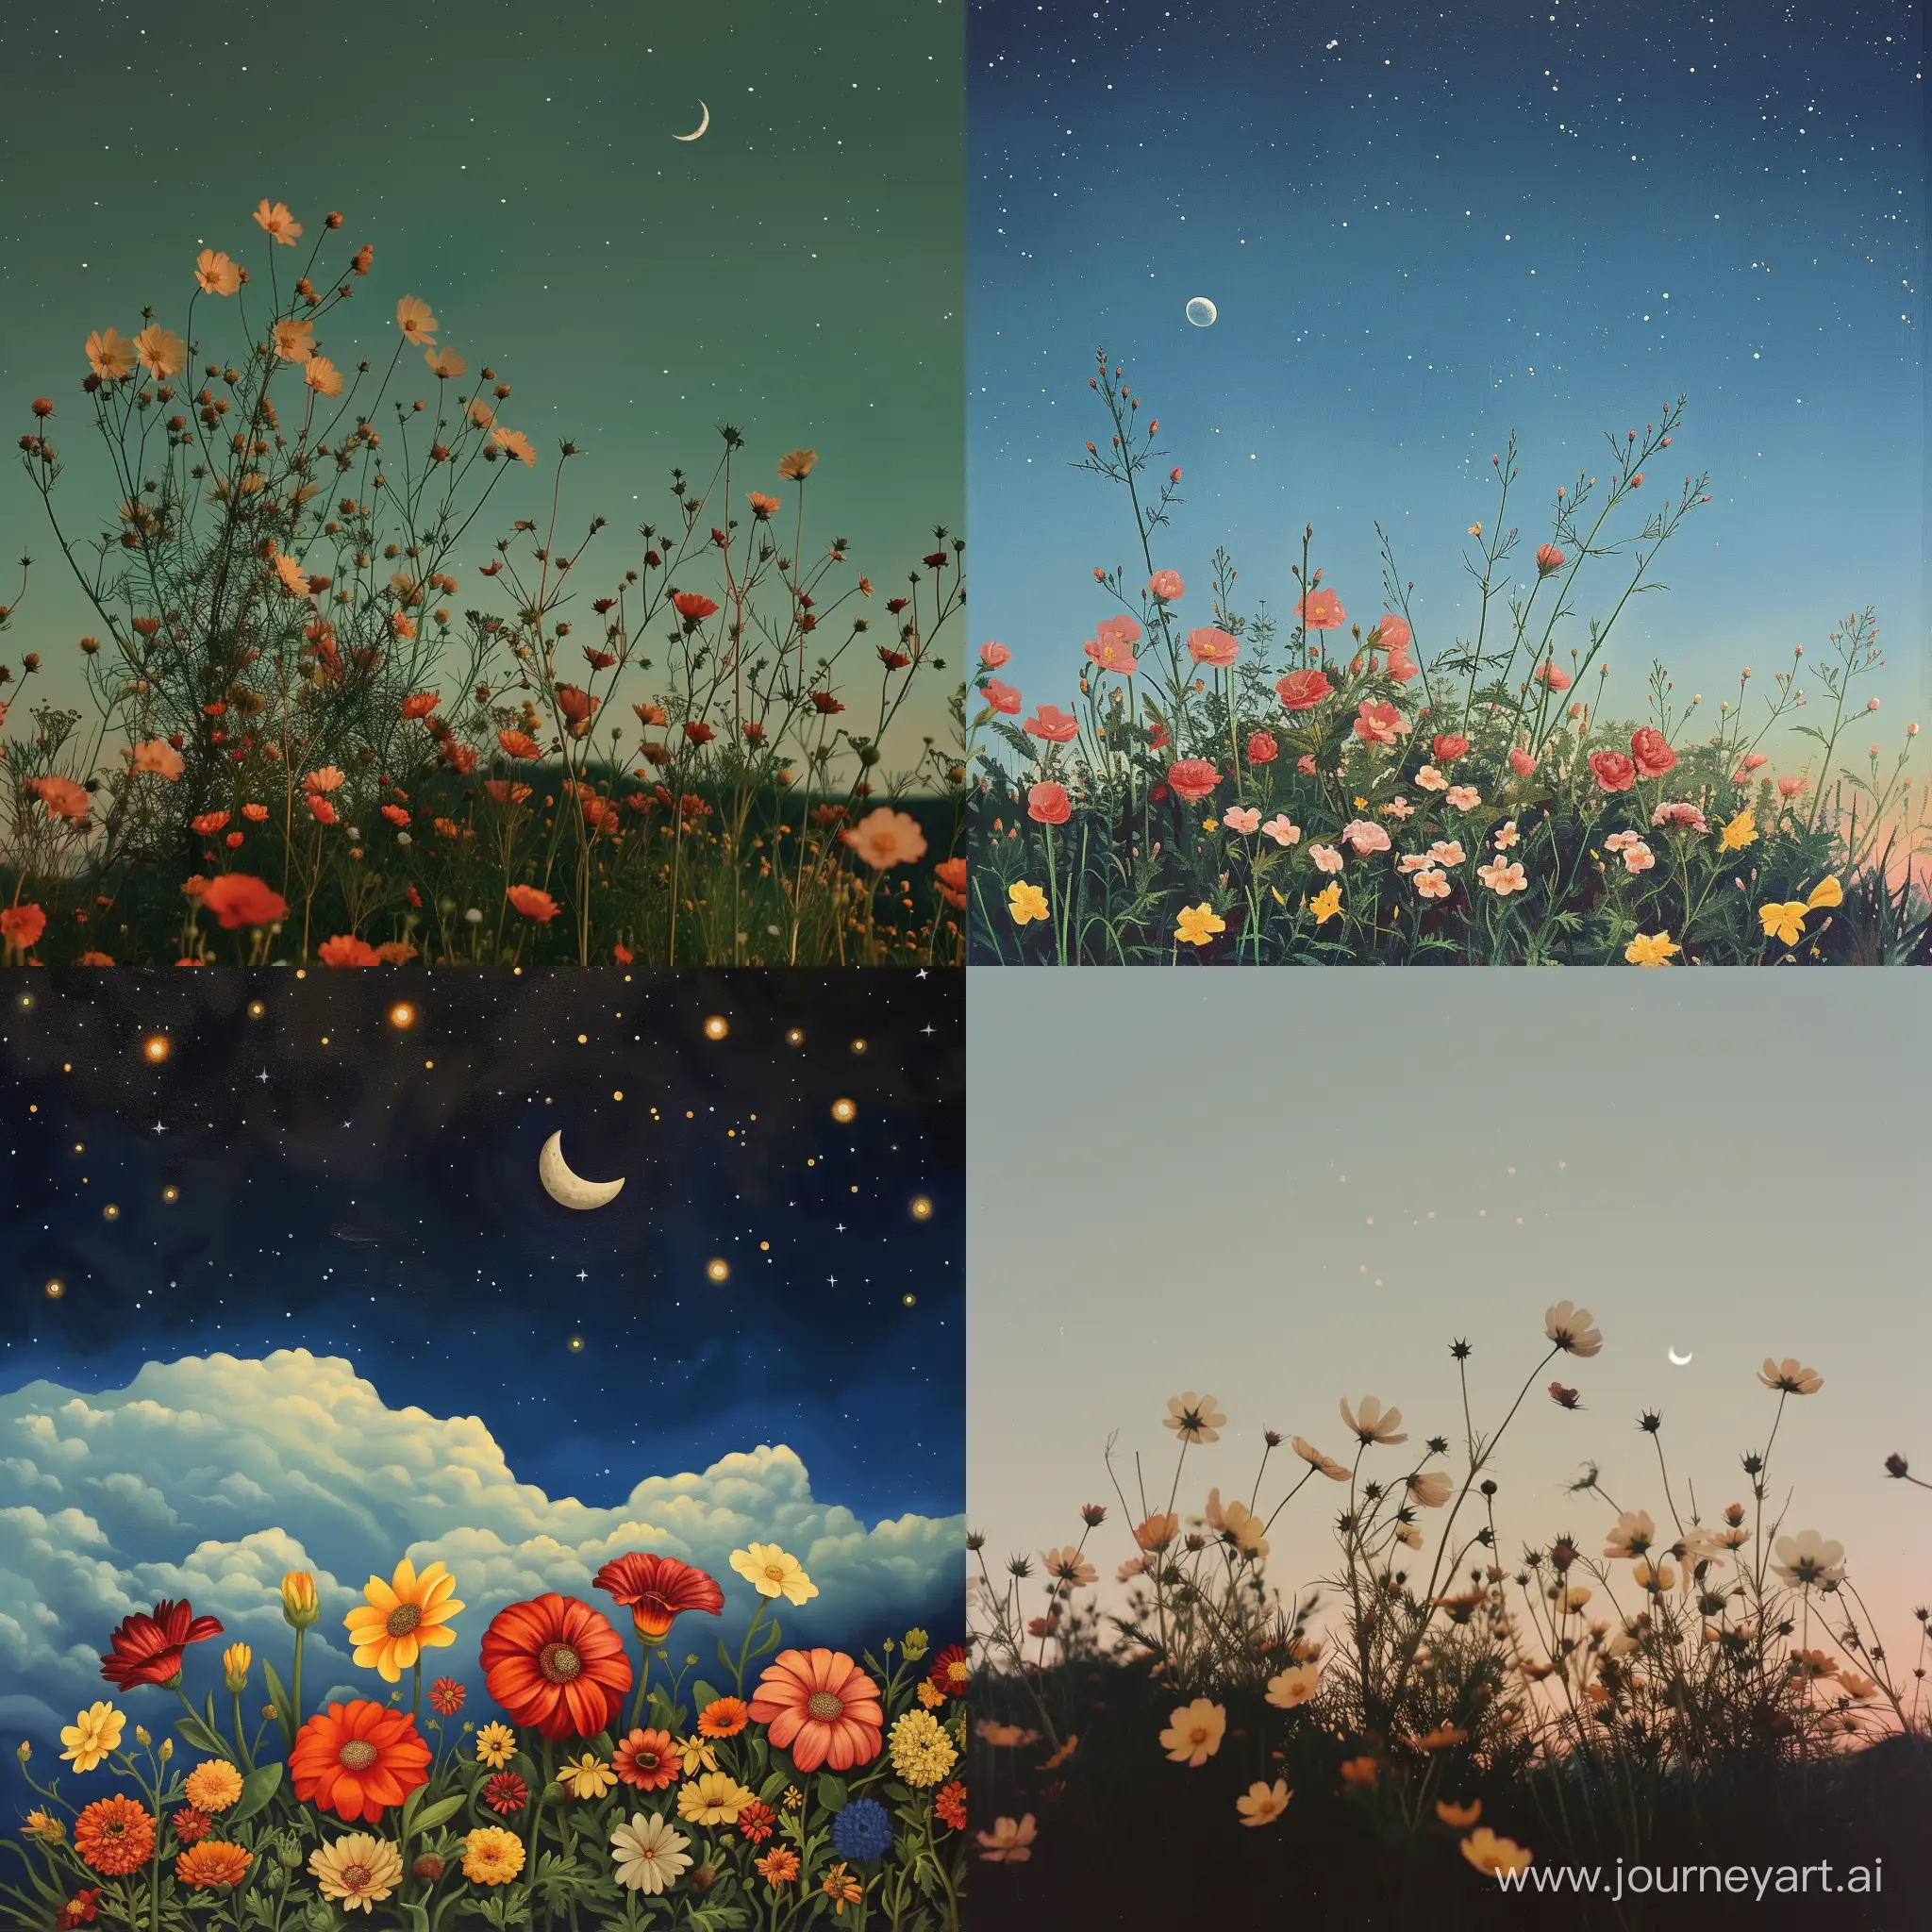 زهور وقمر والسماء فيها قليل من النجوم